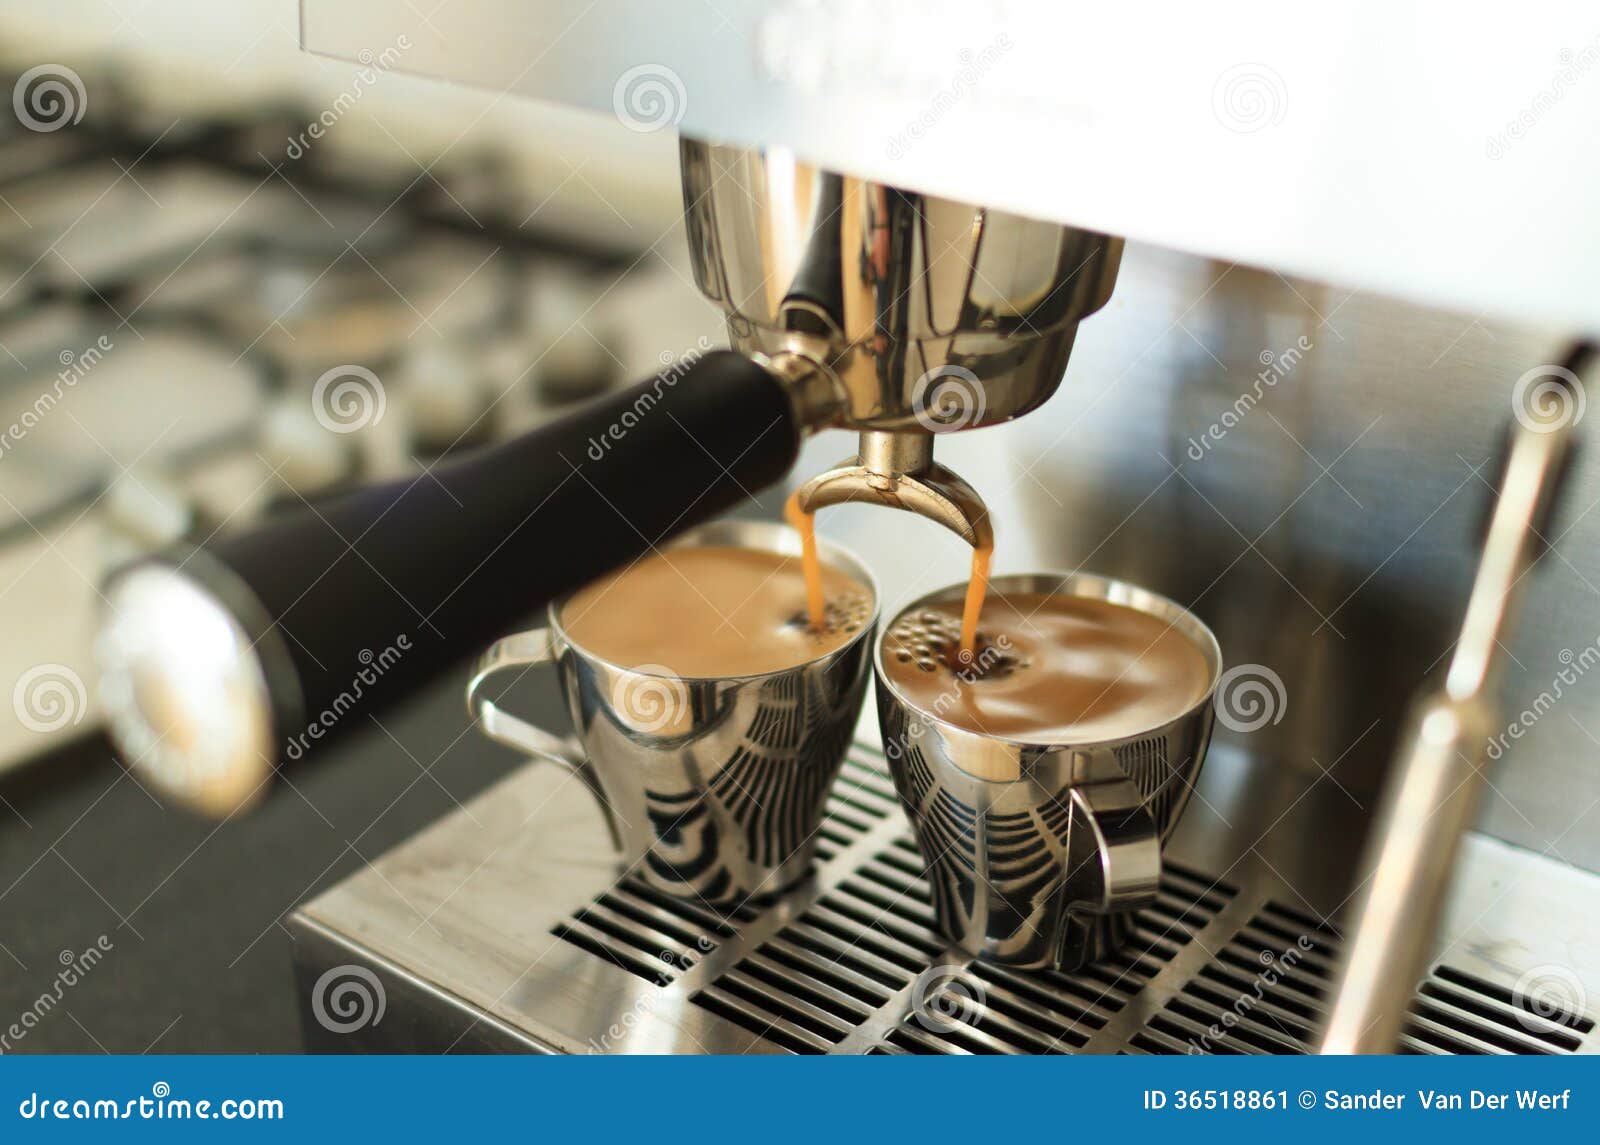 making espresso